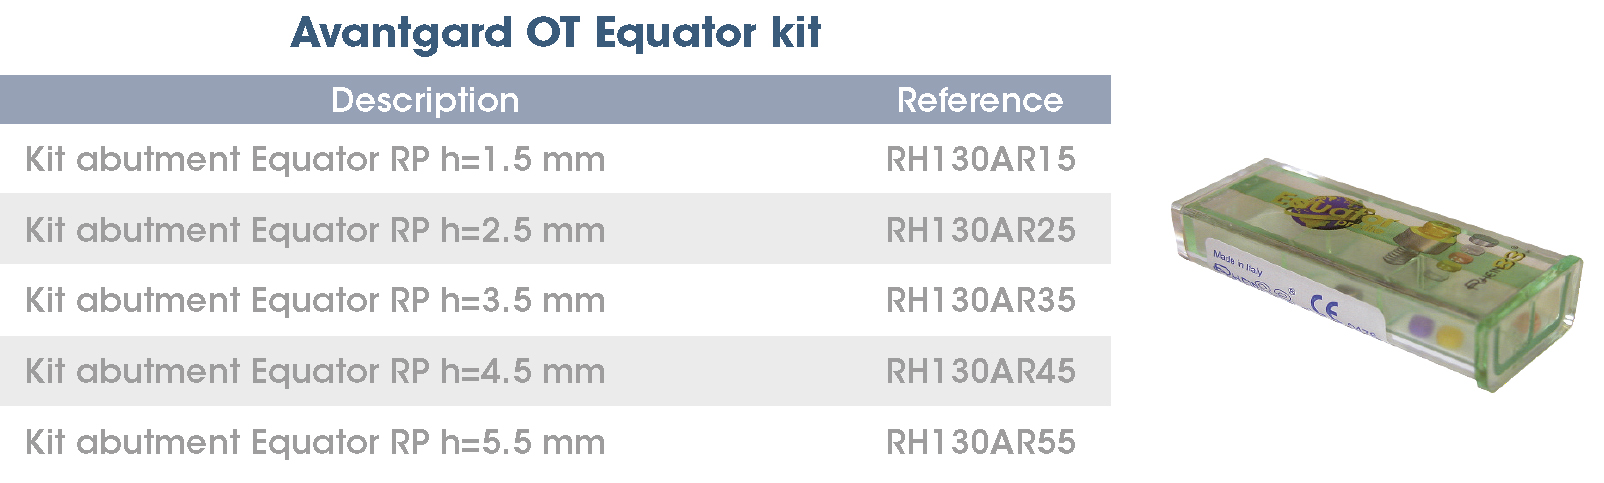 OT Equator kit AvantgardPEAK EN